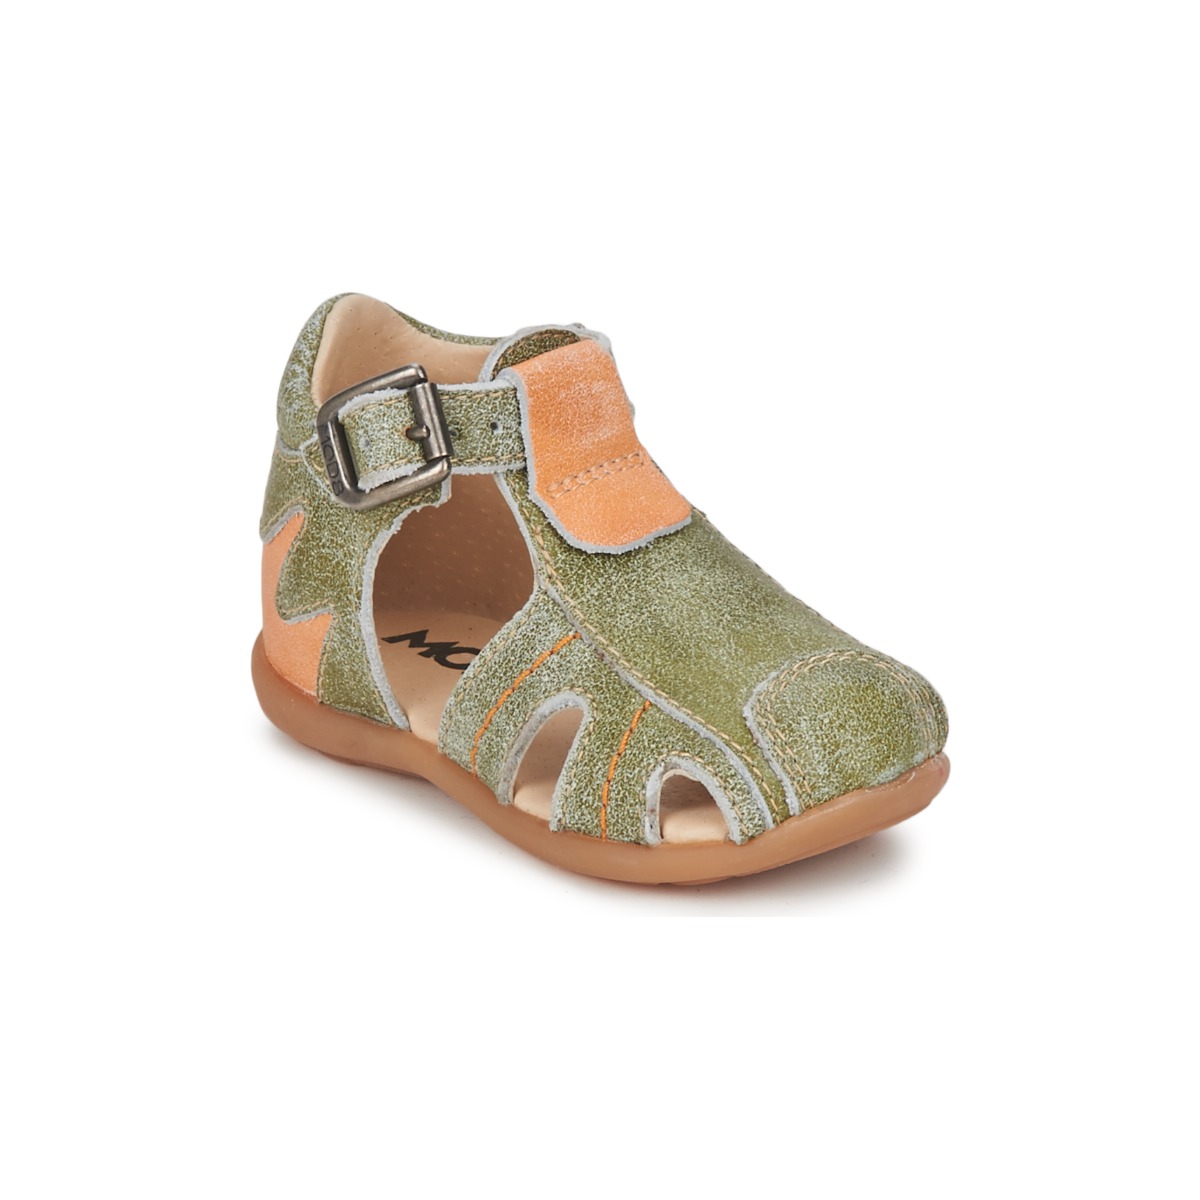 Topánky Chlapec Sandále Mod'8 ALUCINE Zelená / Oranžová